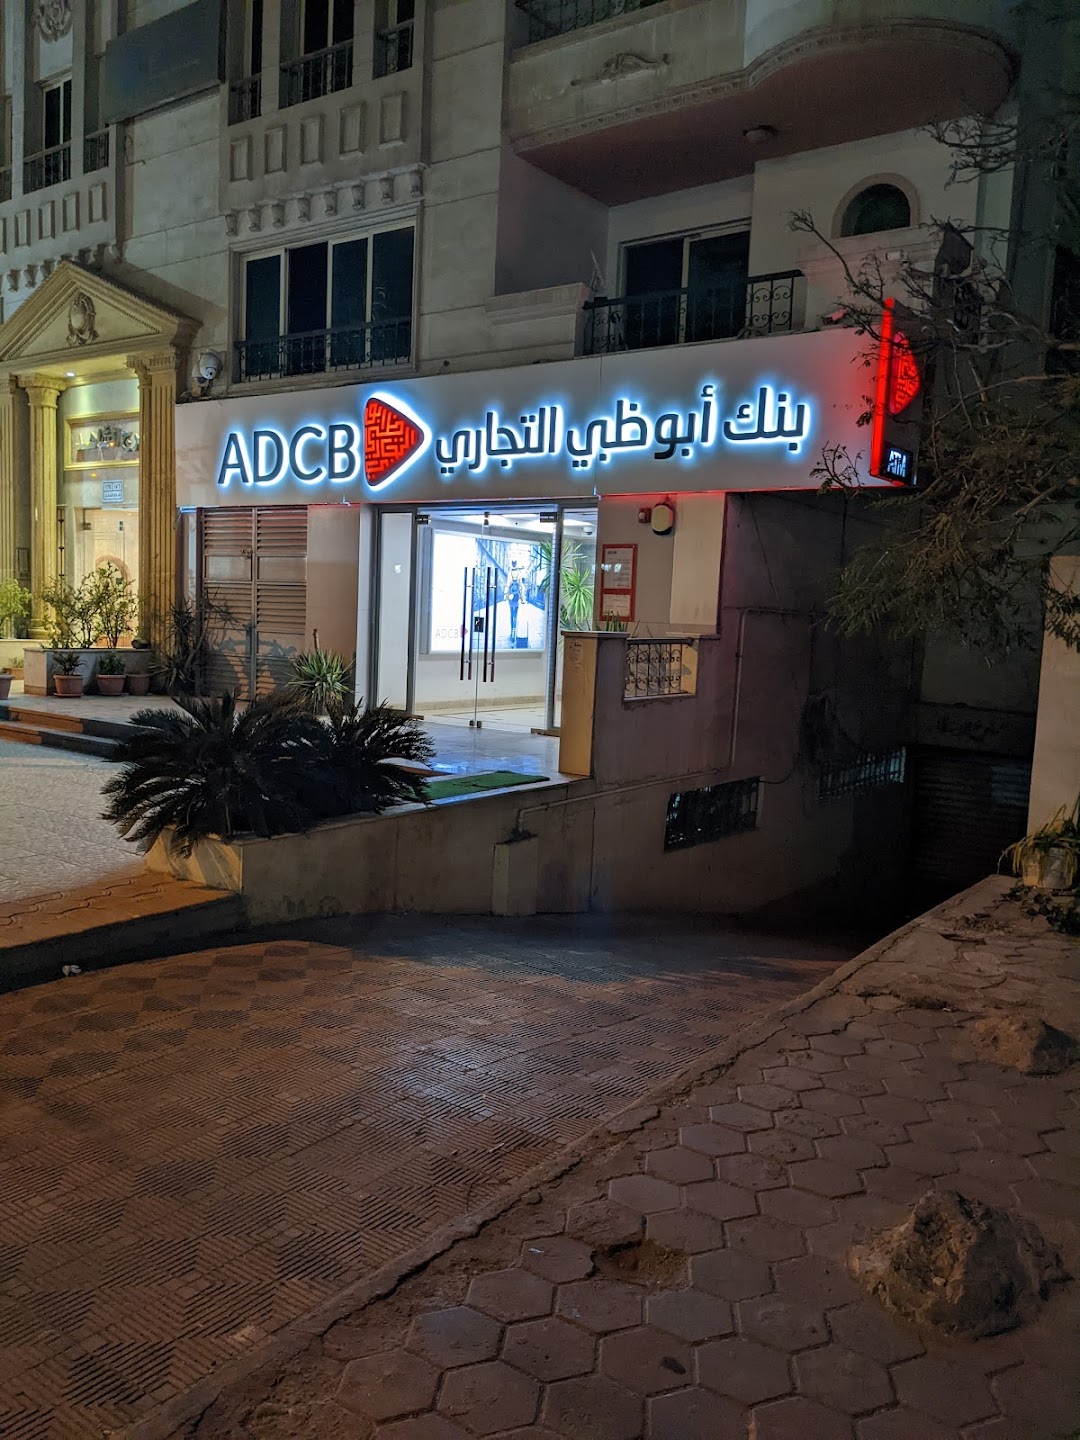 ADCB - Egypt, El Hegaz Branch